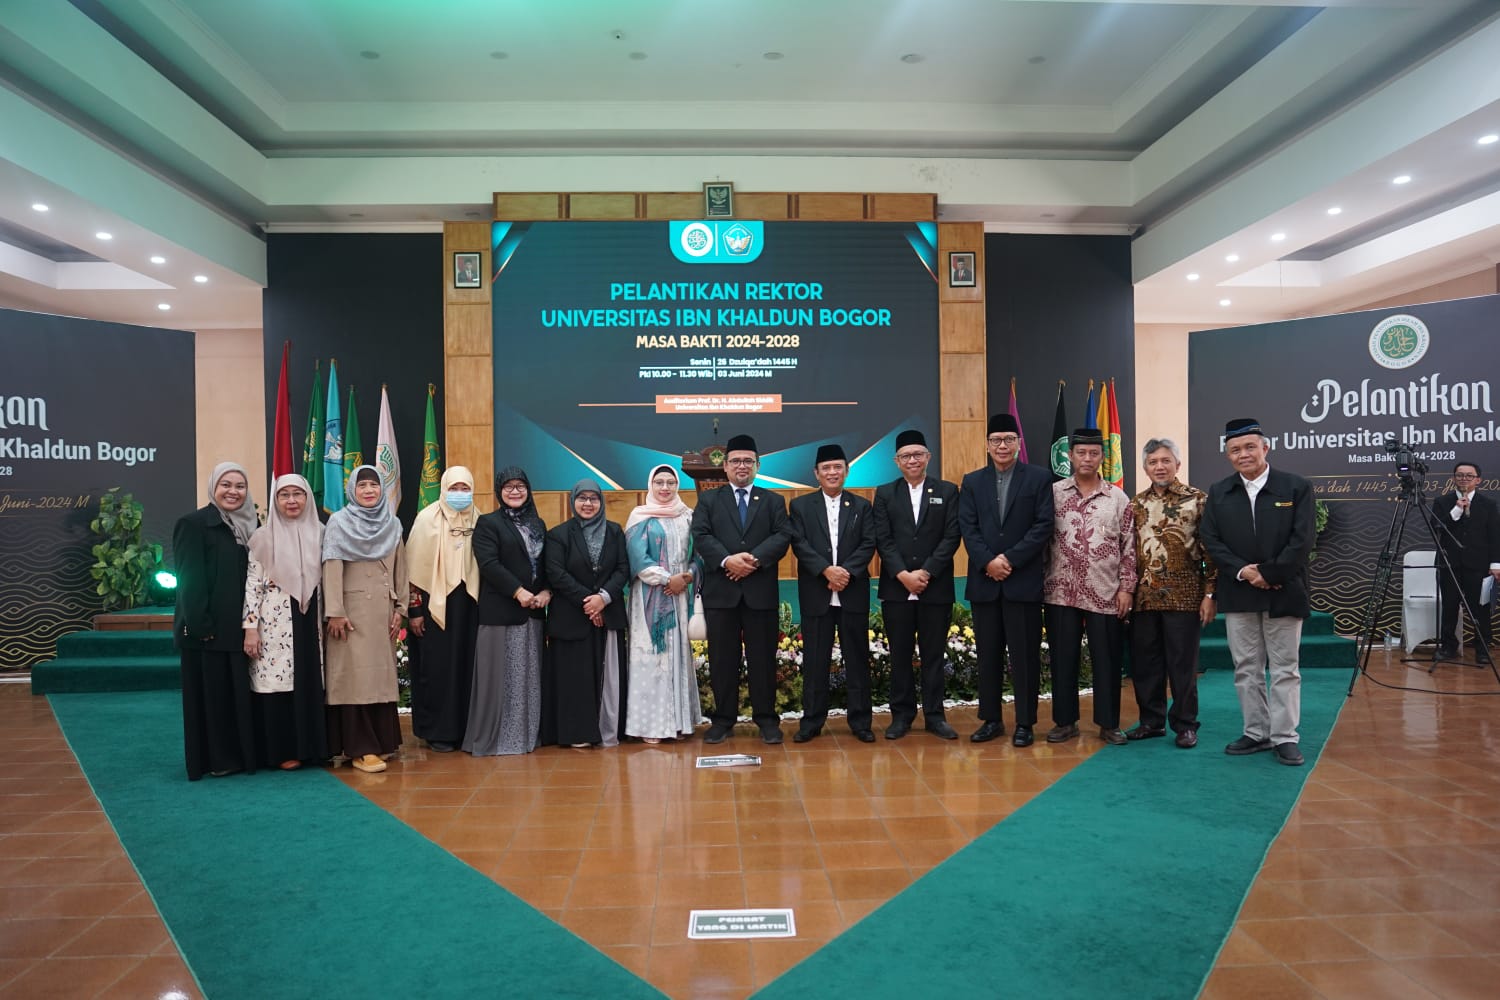 Prof Mujahidin Kembali Jadi Rektor Universitas Ibn Khaldun Bogor Targetkan akreditasi institusi unggul di tahun Ini